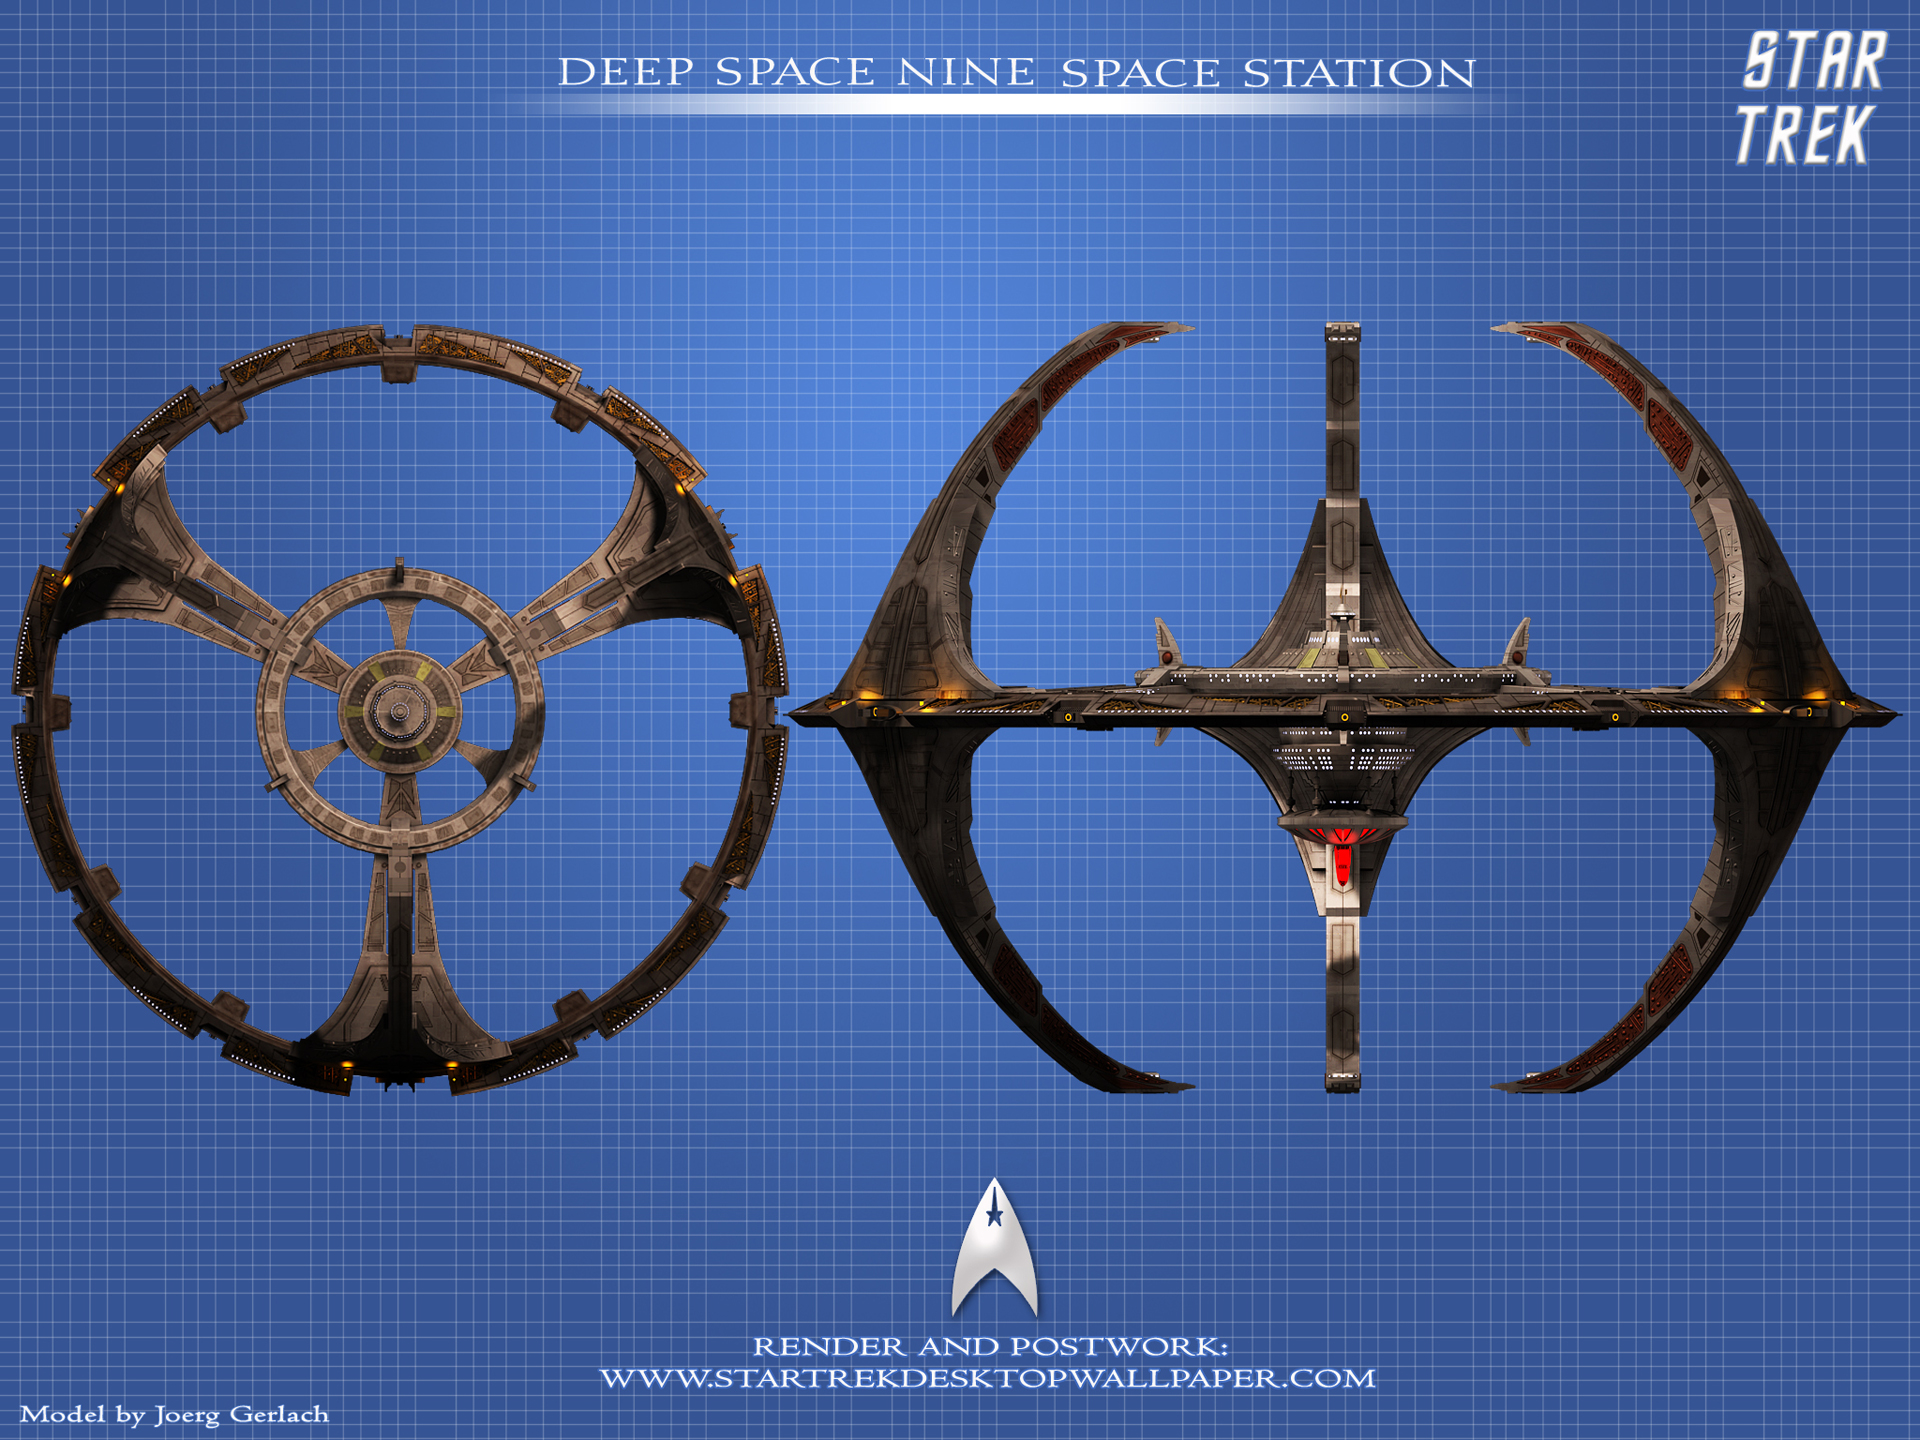 Star Trek Deep Space Nine Space Station, free Star Trek computer ...